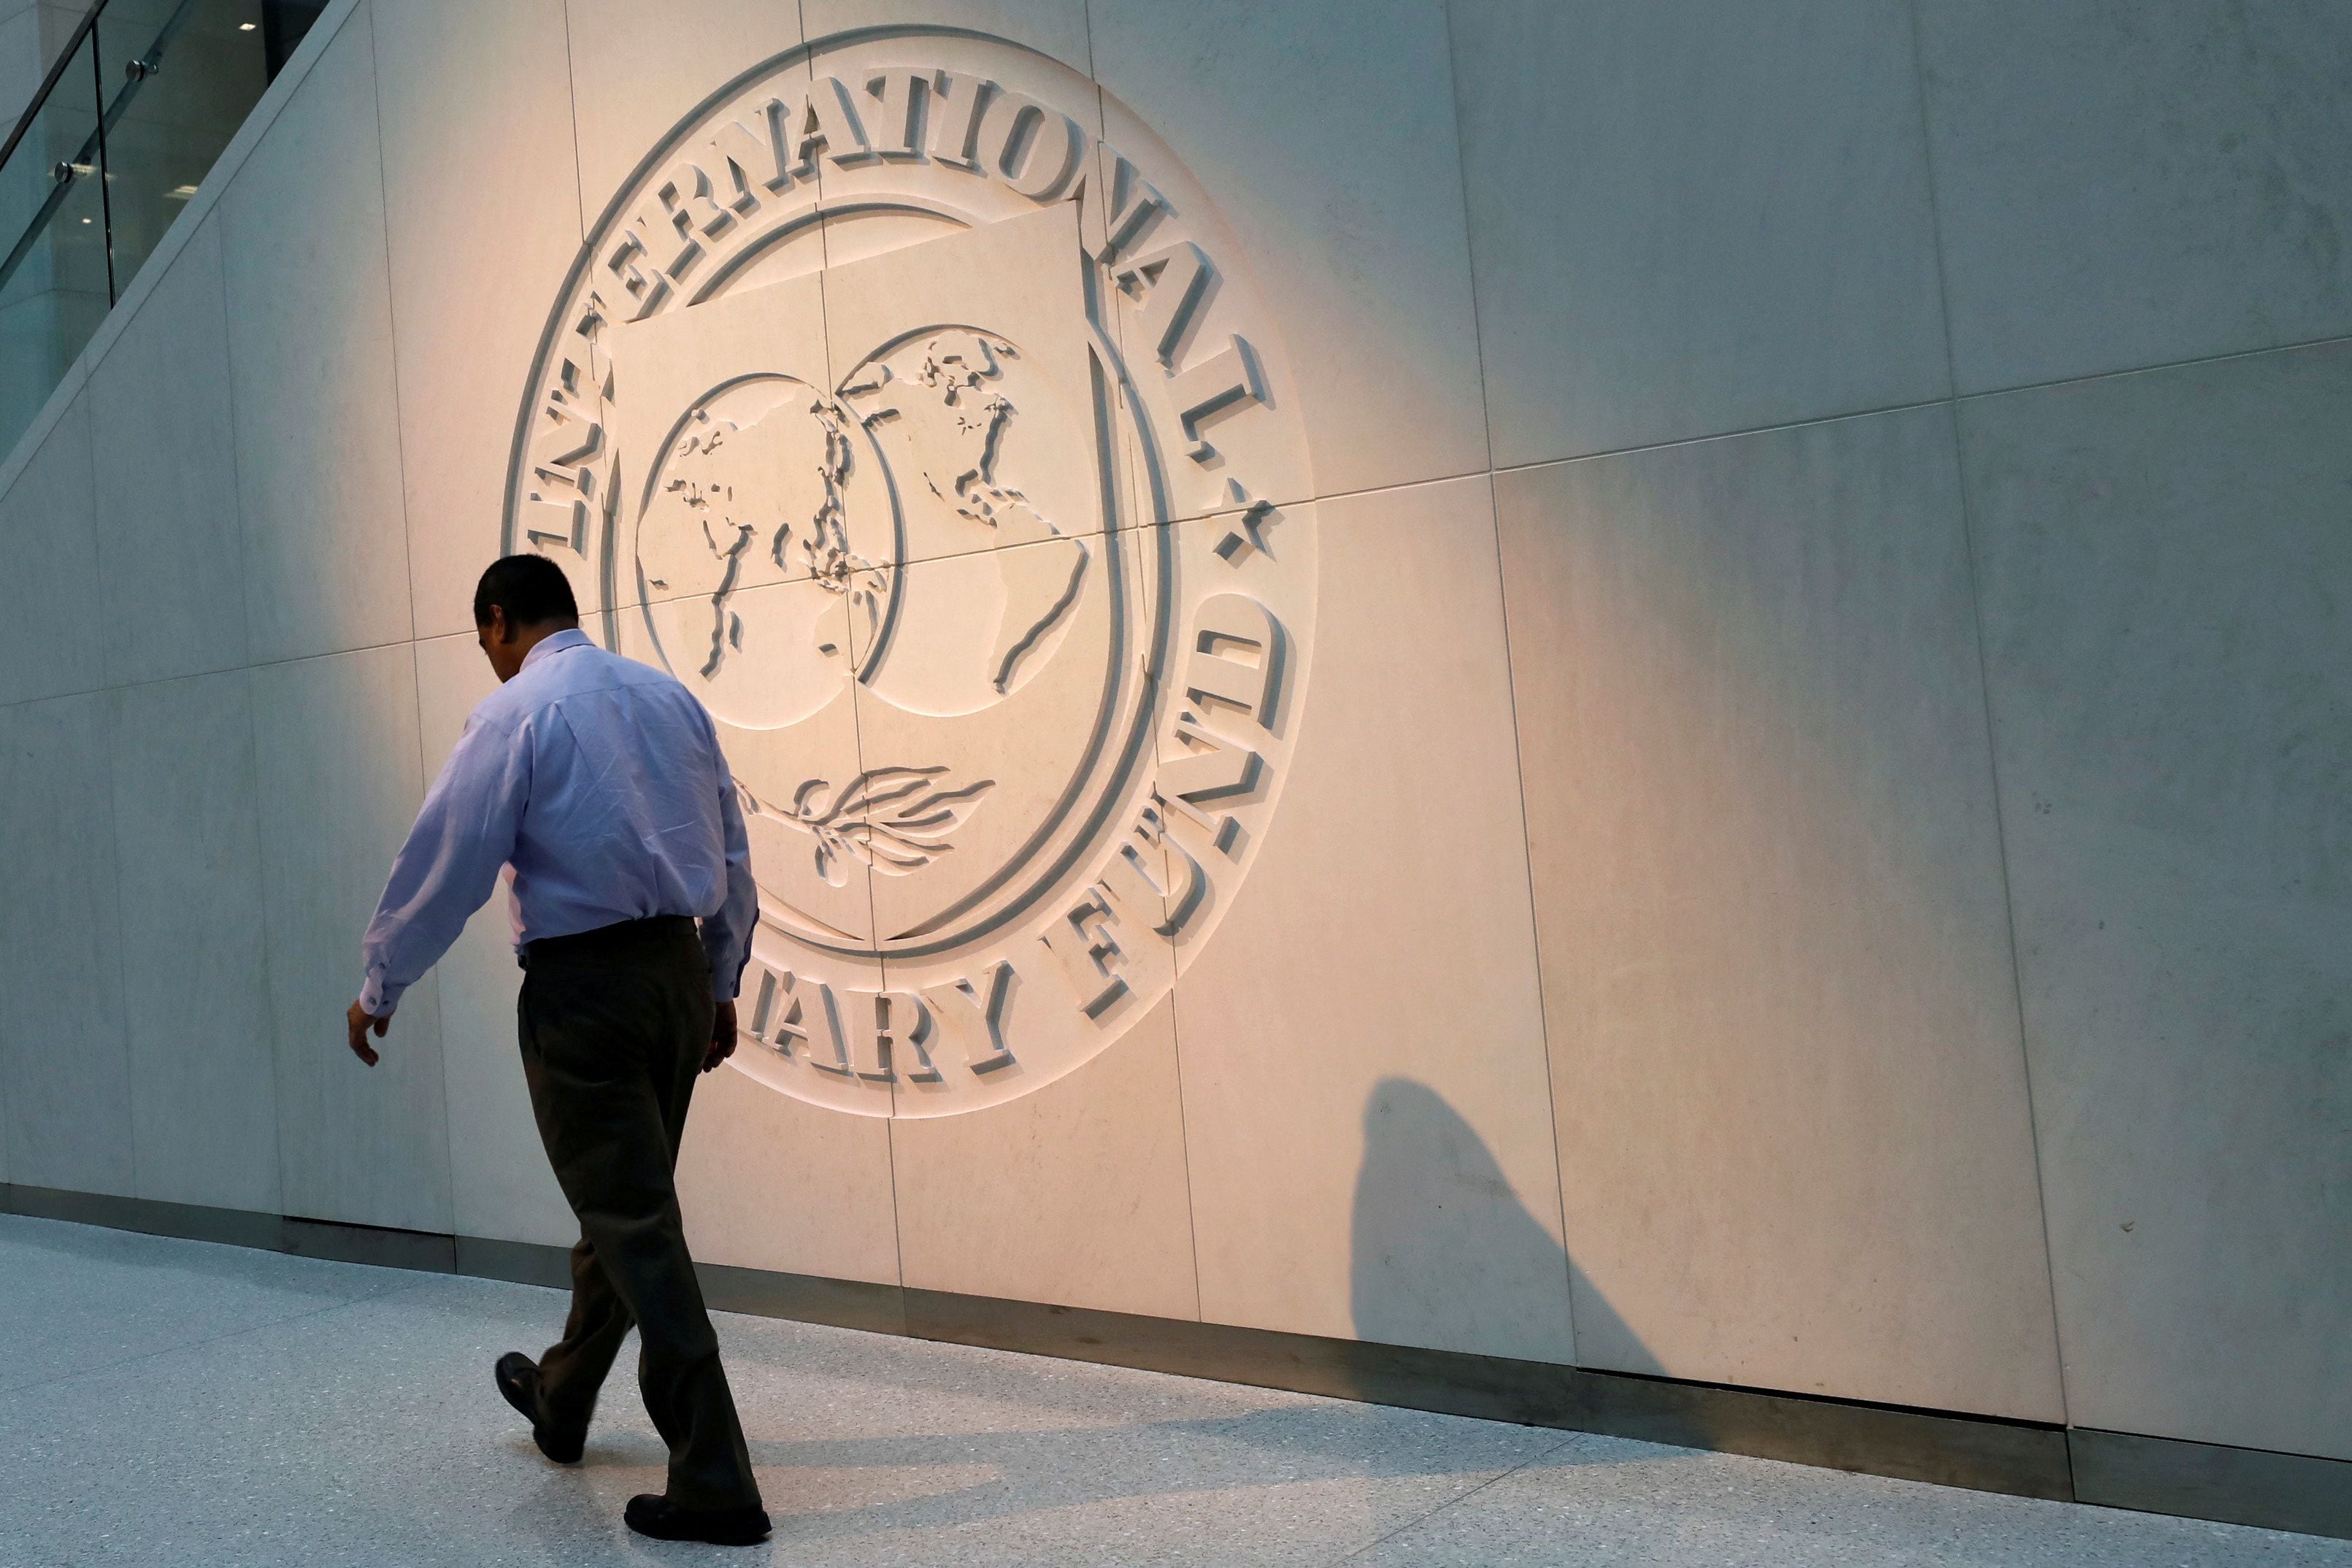 Se abrirá una nueva etapa en la relación con el FMI tras el cambio de Gobierno (REUTERS)